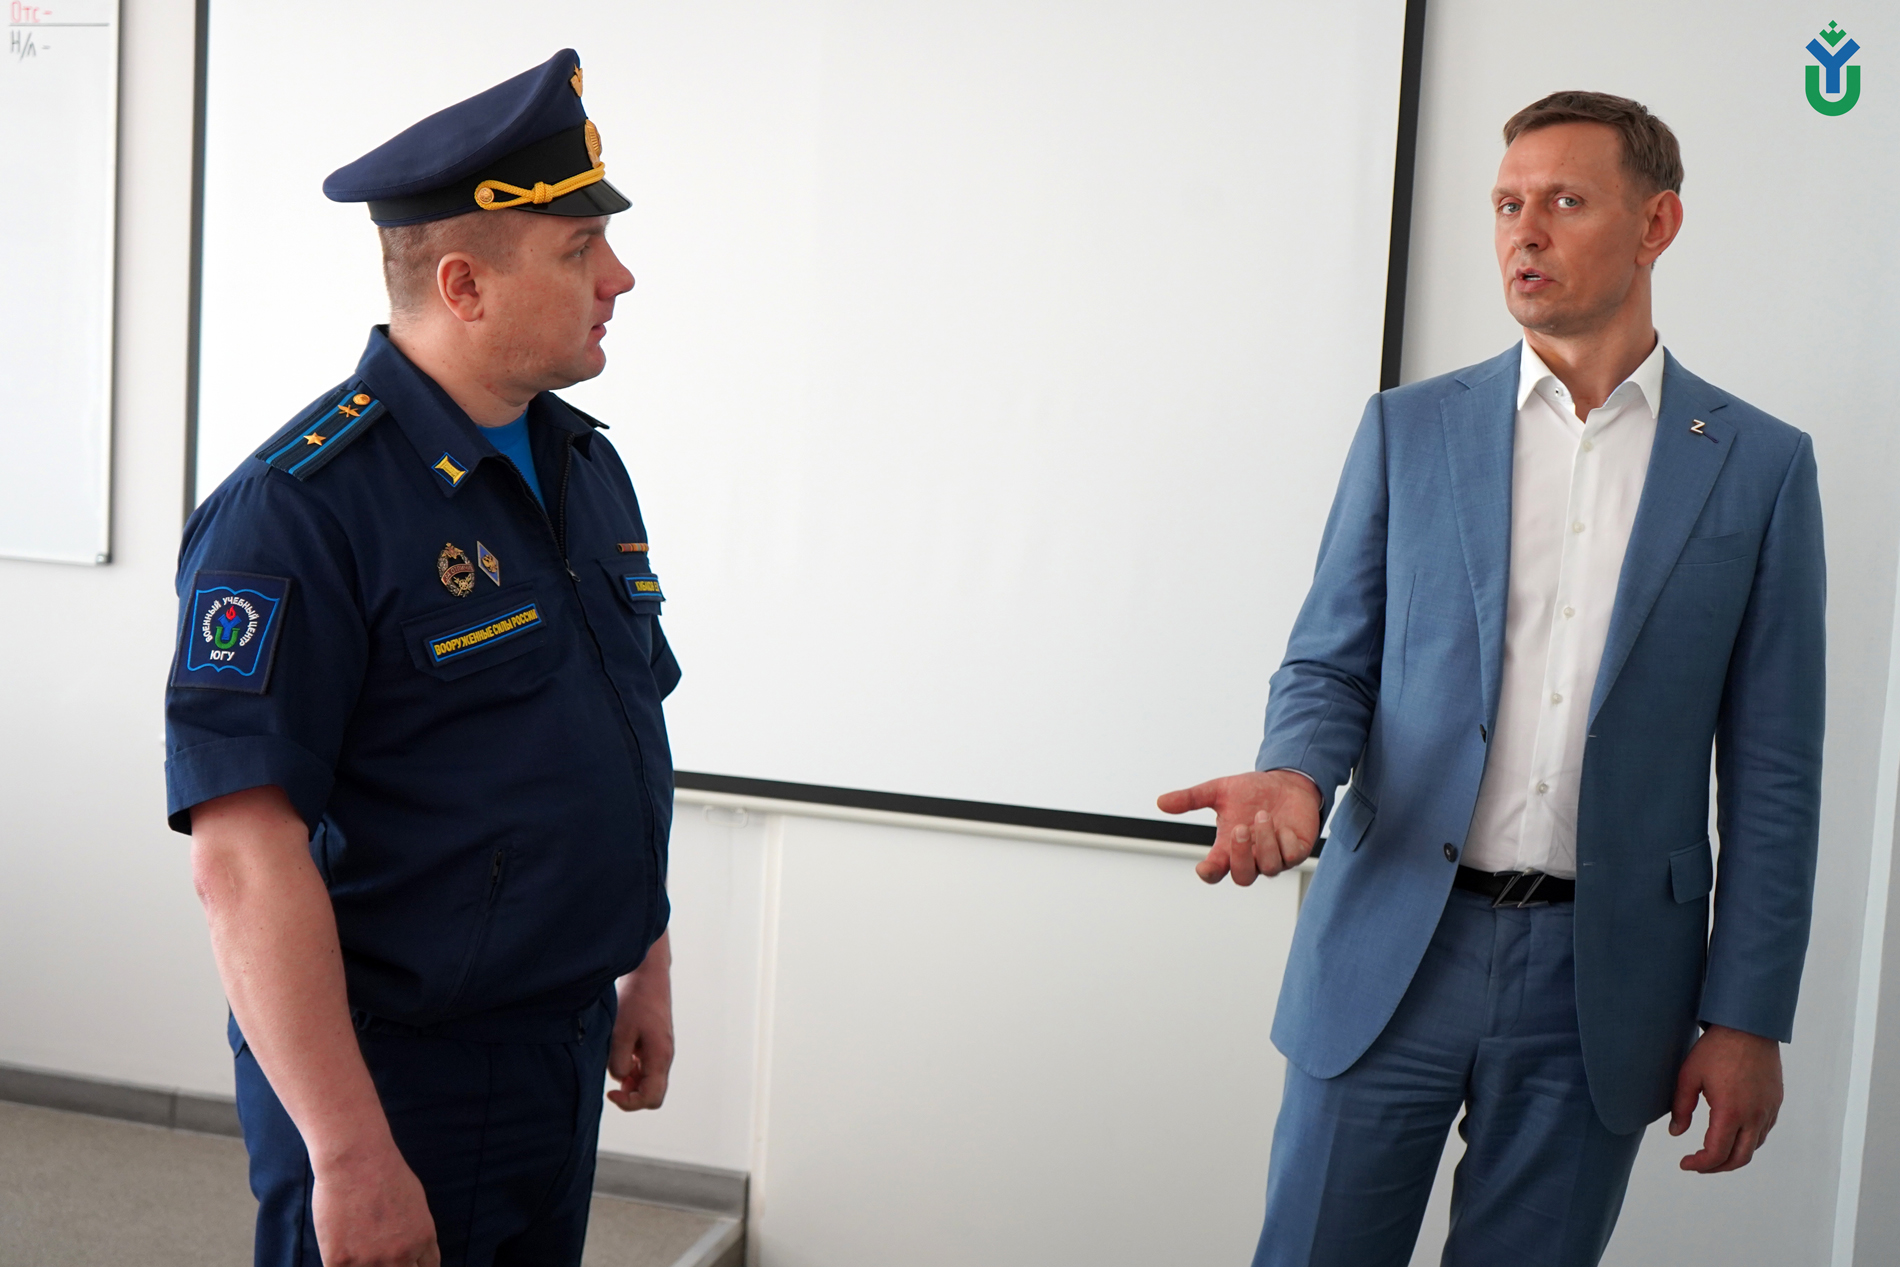 ВУЦ ЮГУ посетил глава города-героя Новороссийска - Андрей Кравченко